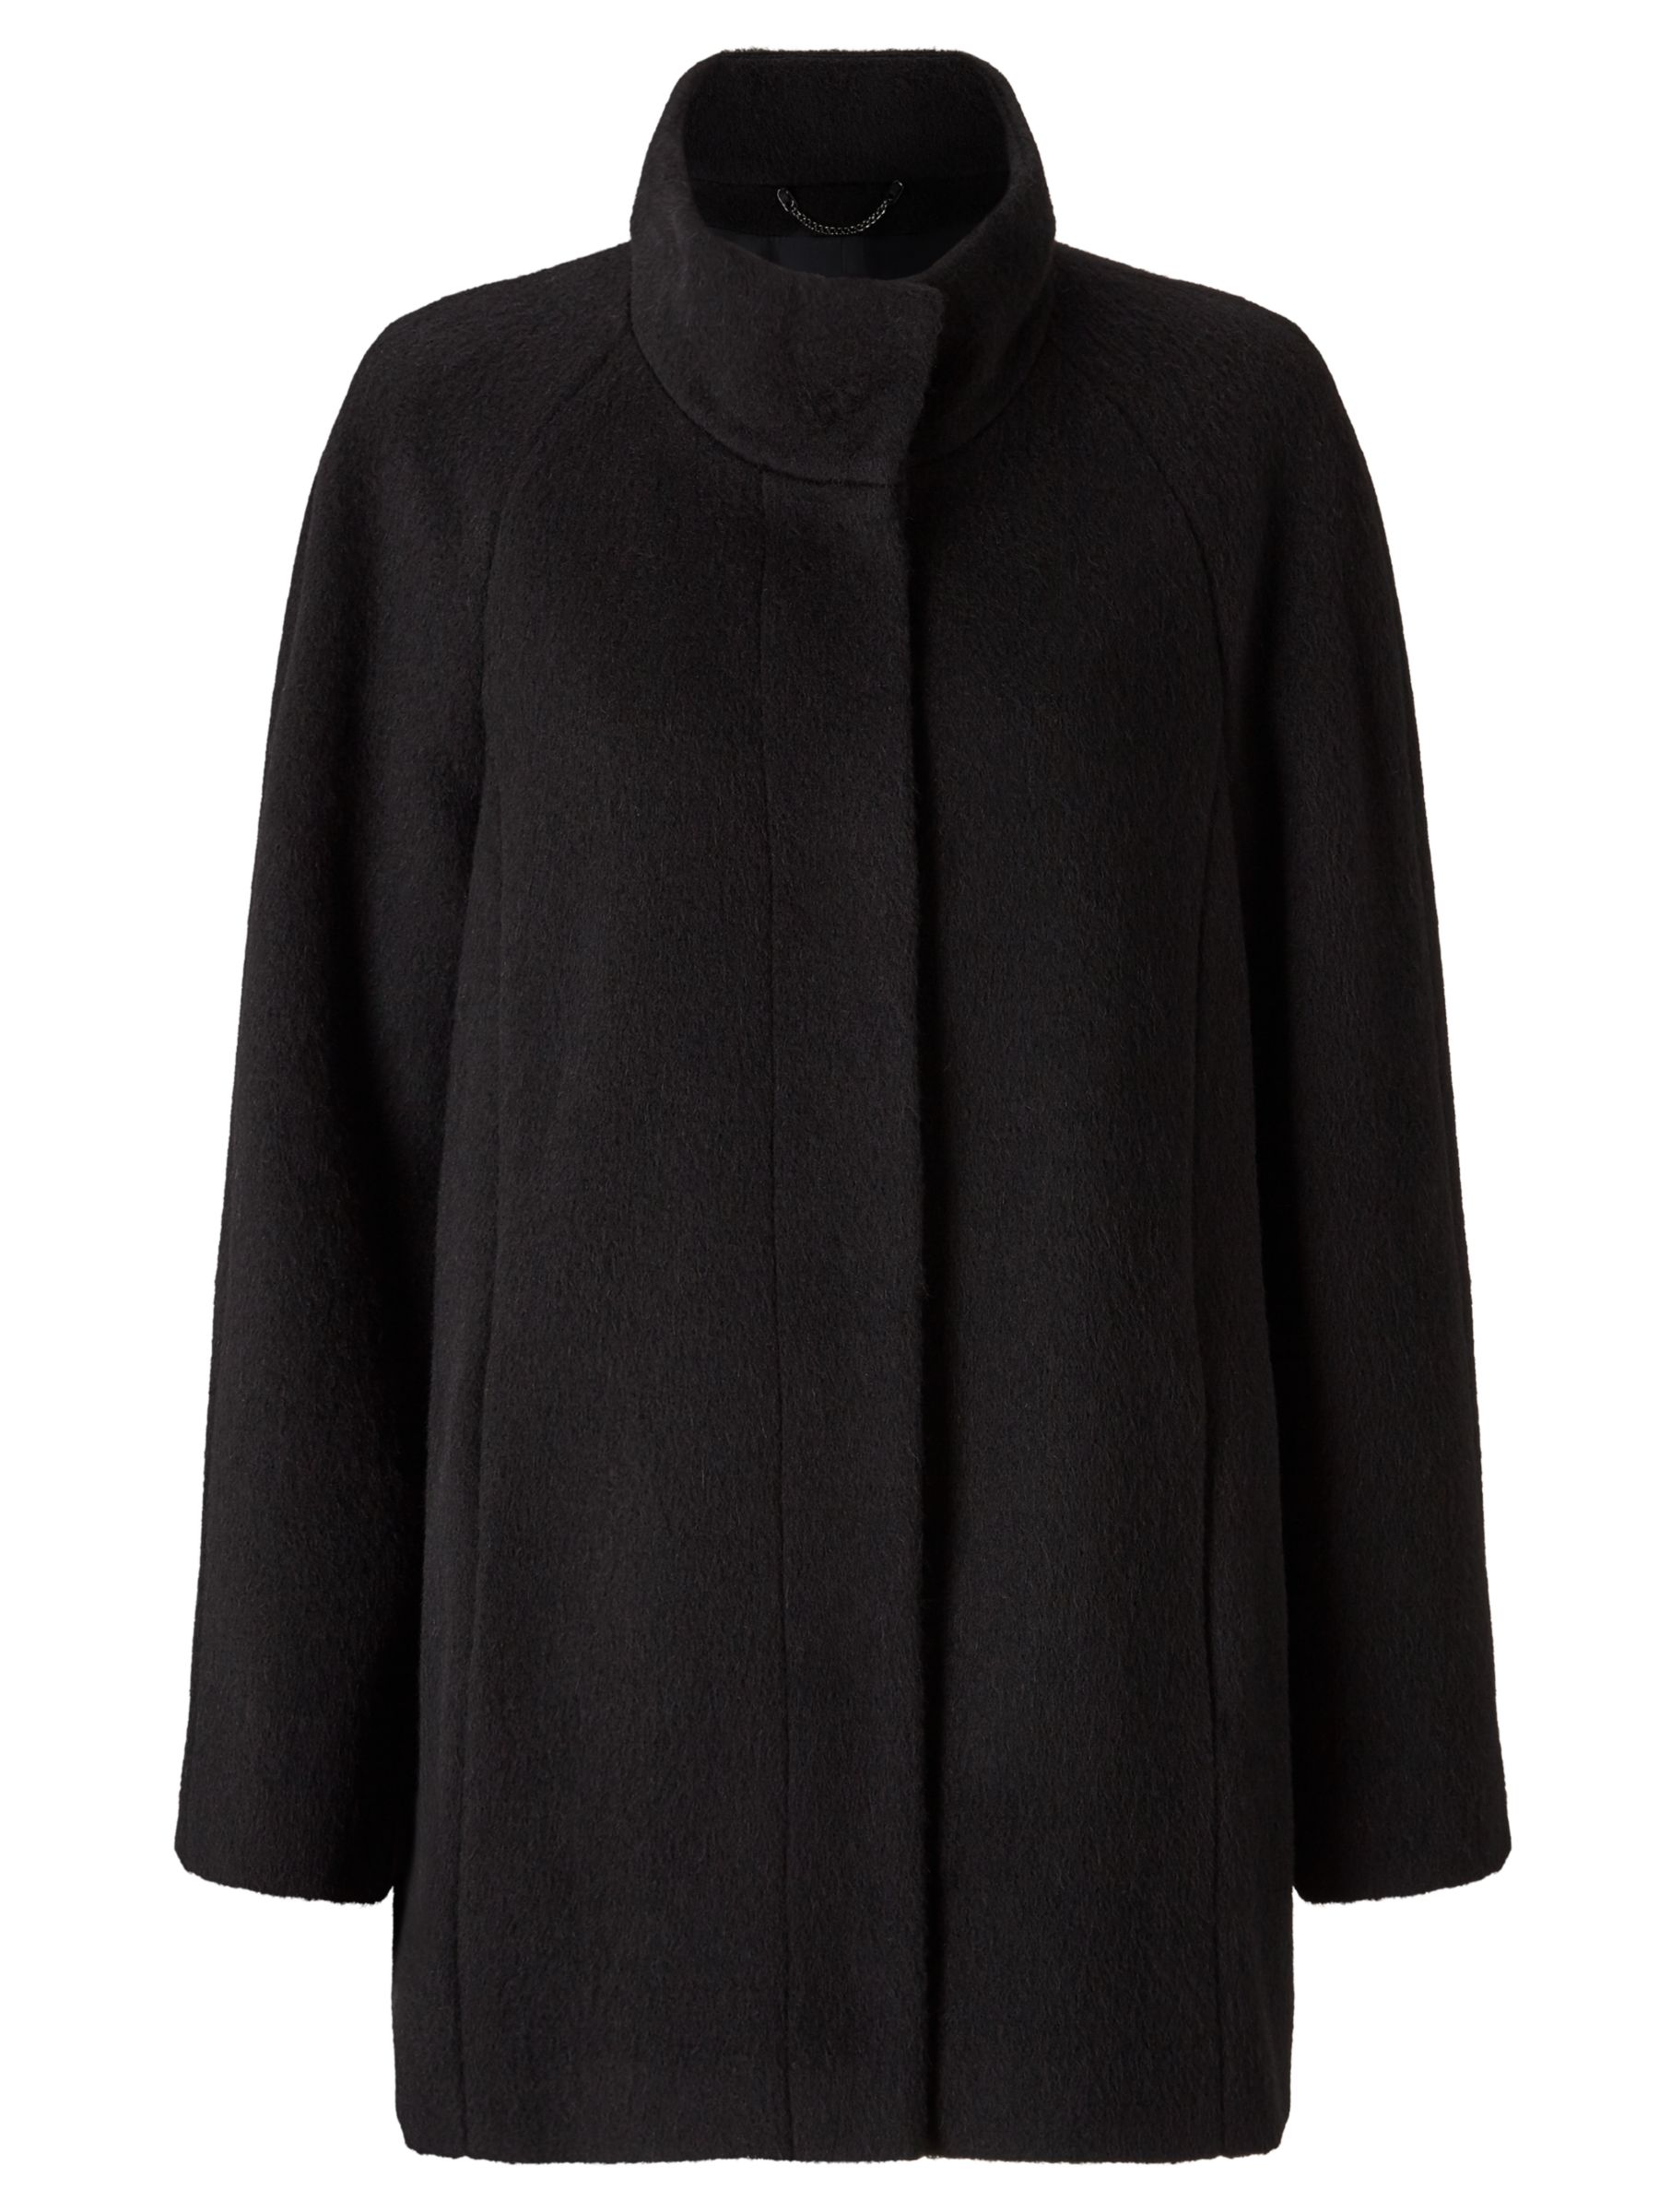 Buy Gerry Weber Wool Blend Coat, Black | John Lewis